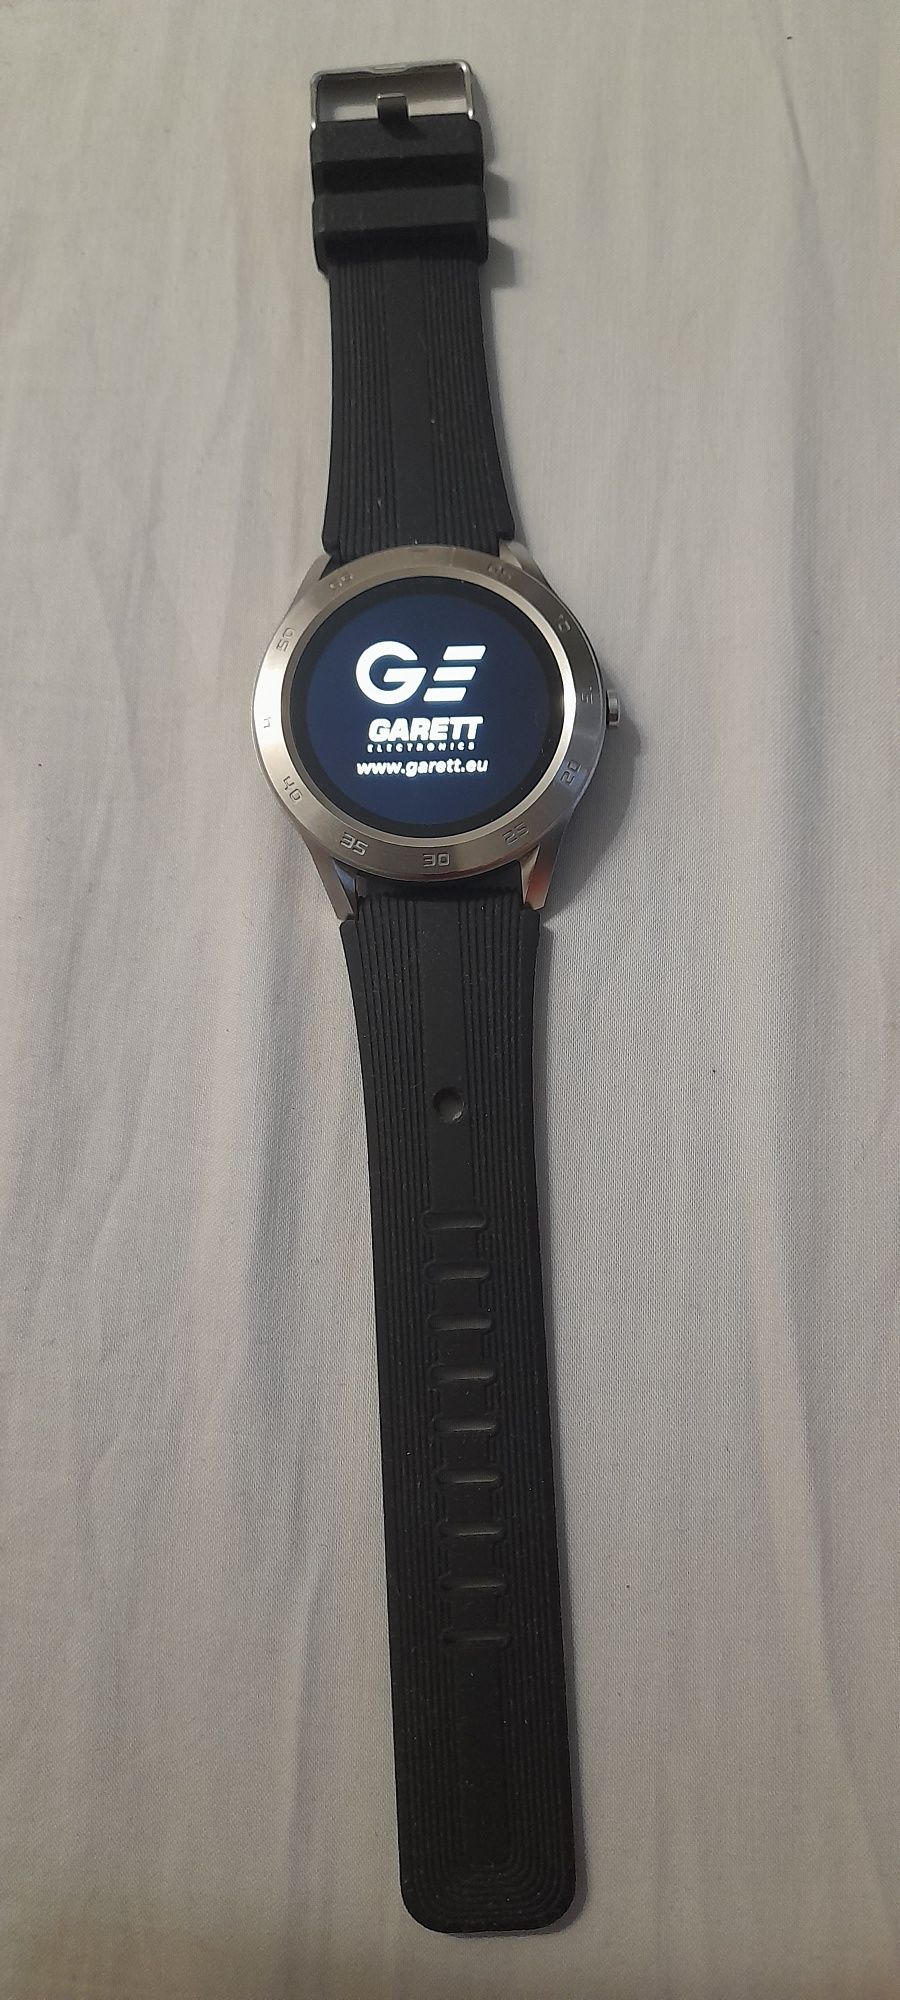 Smartwatch garett gt22s